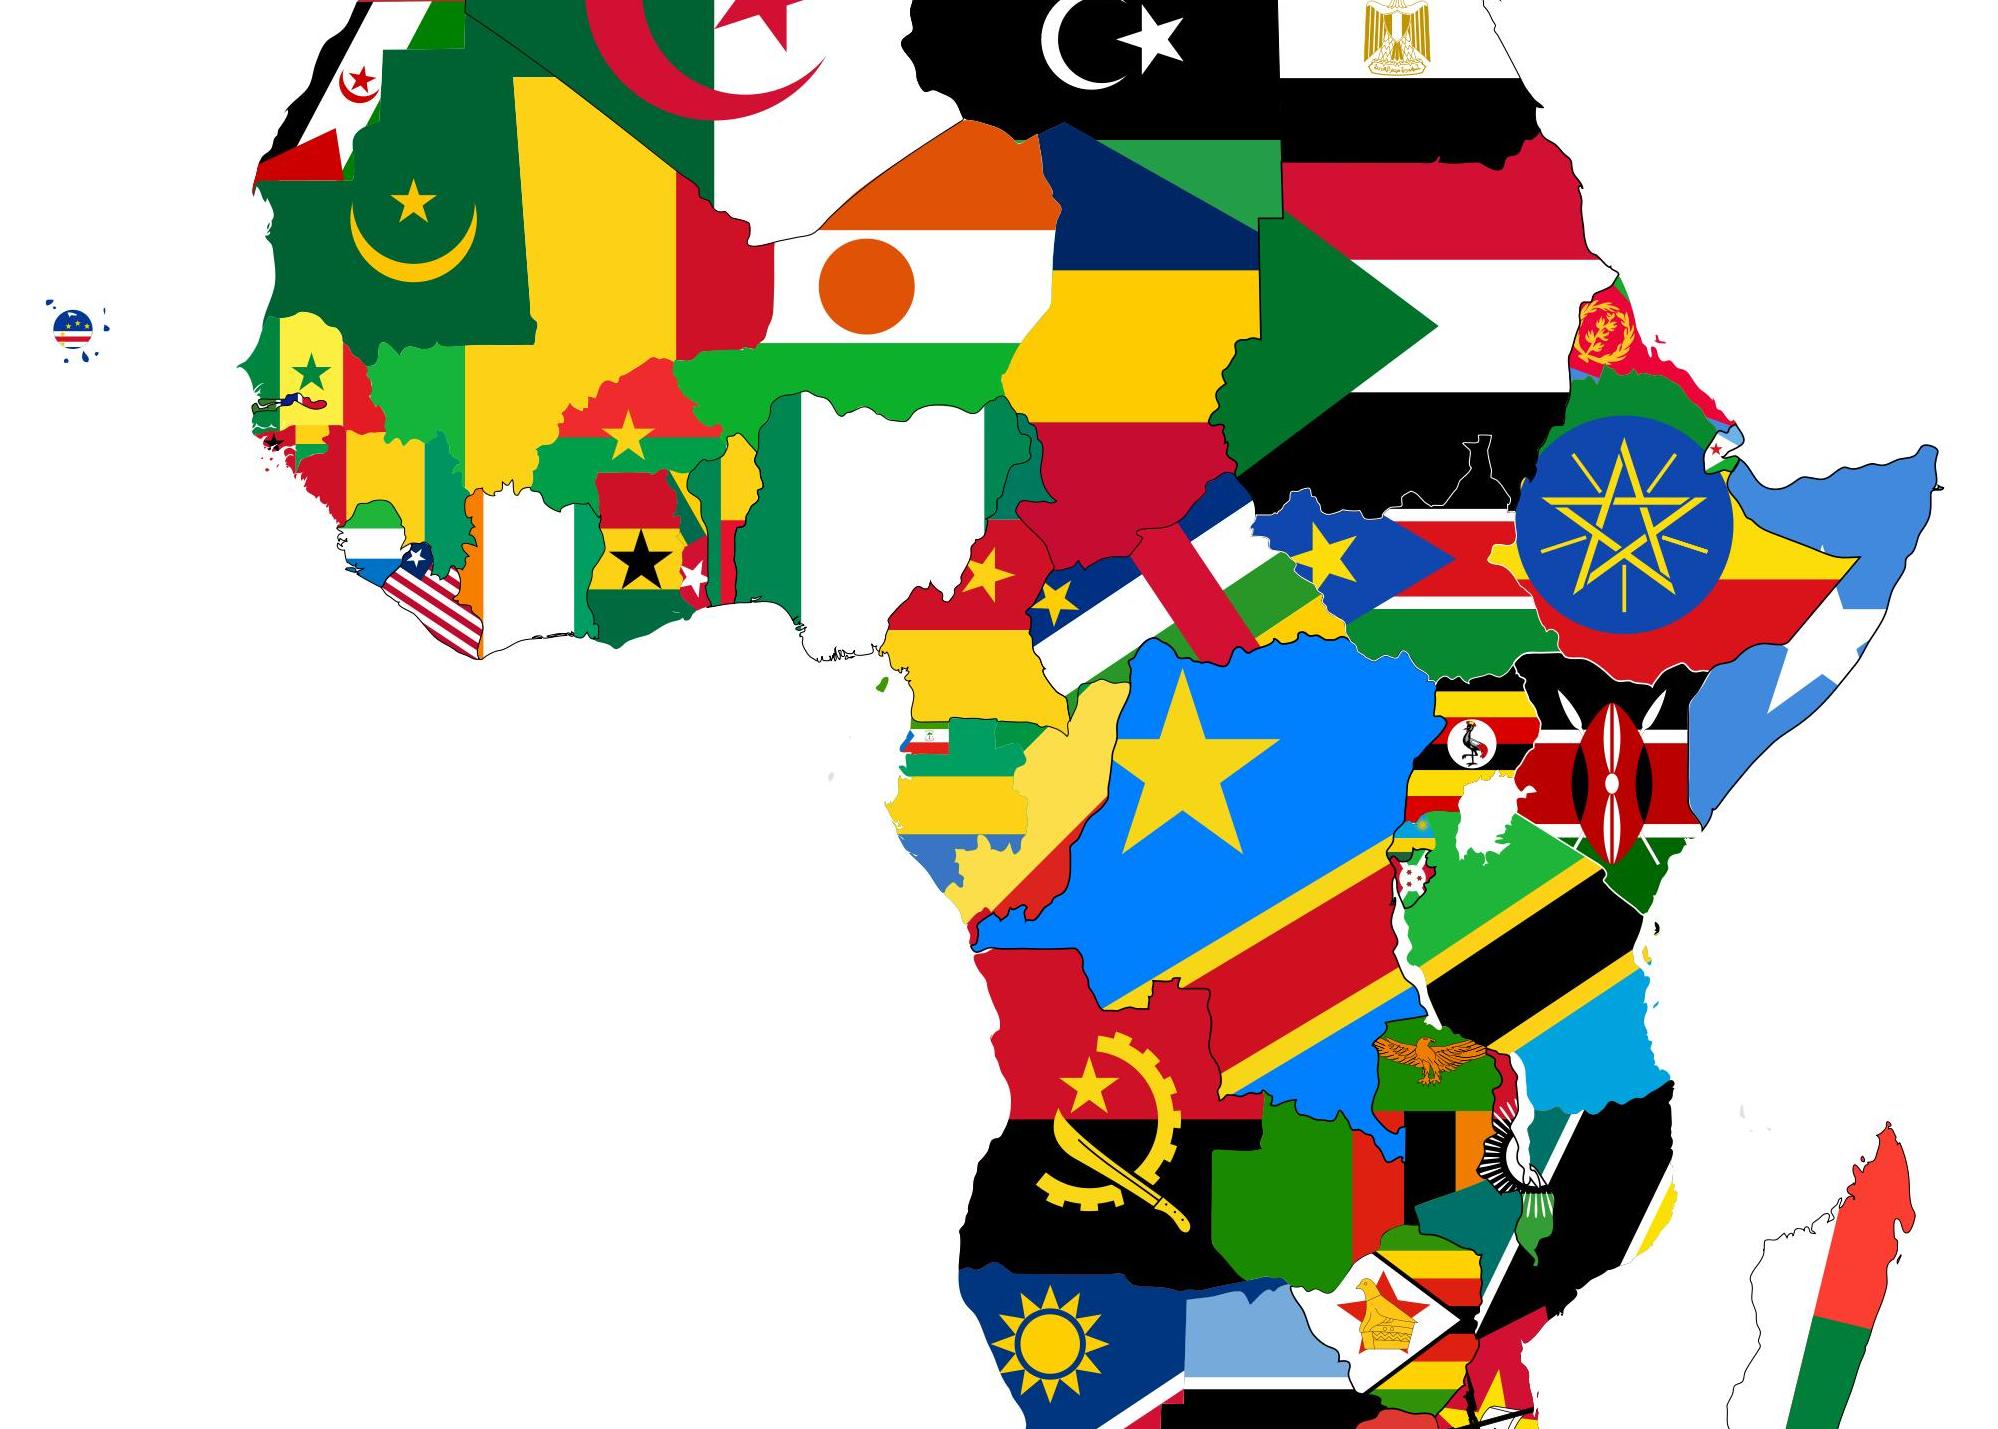 “Afrika - Türkiye: Ekonomik ve Ticari İlişkileri, Değerlendirme ve Beklentileri” Konulu Panel 25 Mayıs 2017 Perşembe Günü TOBB ETÜ’de Gerçekleştirilecek